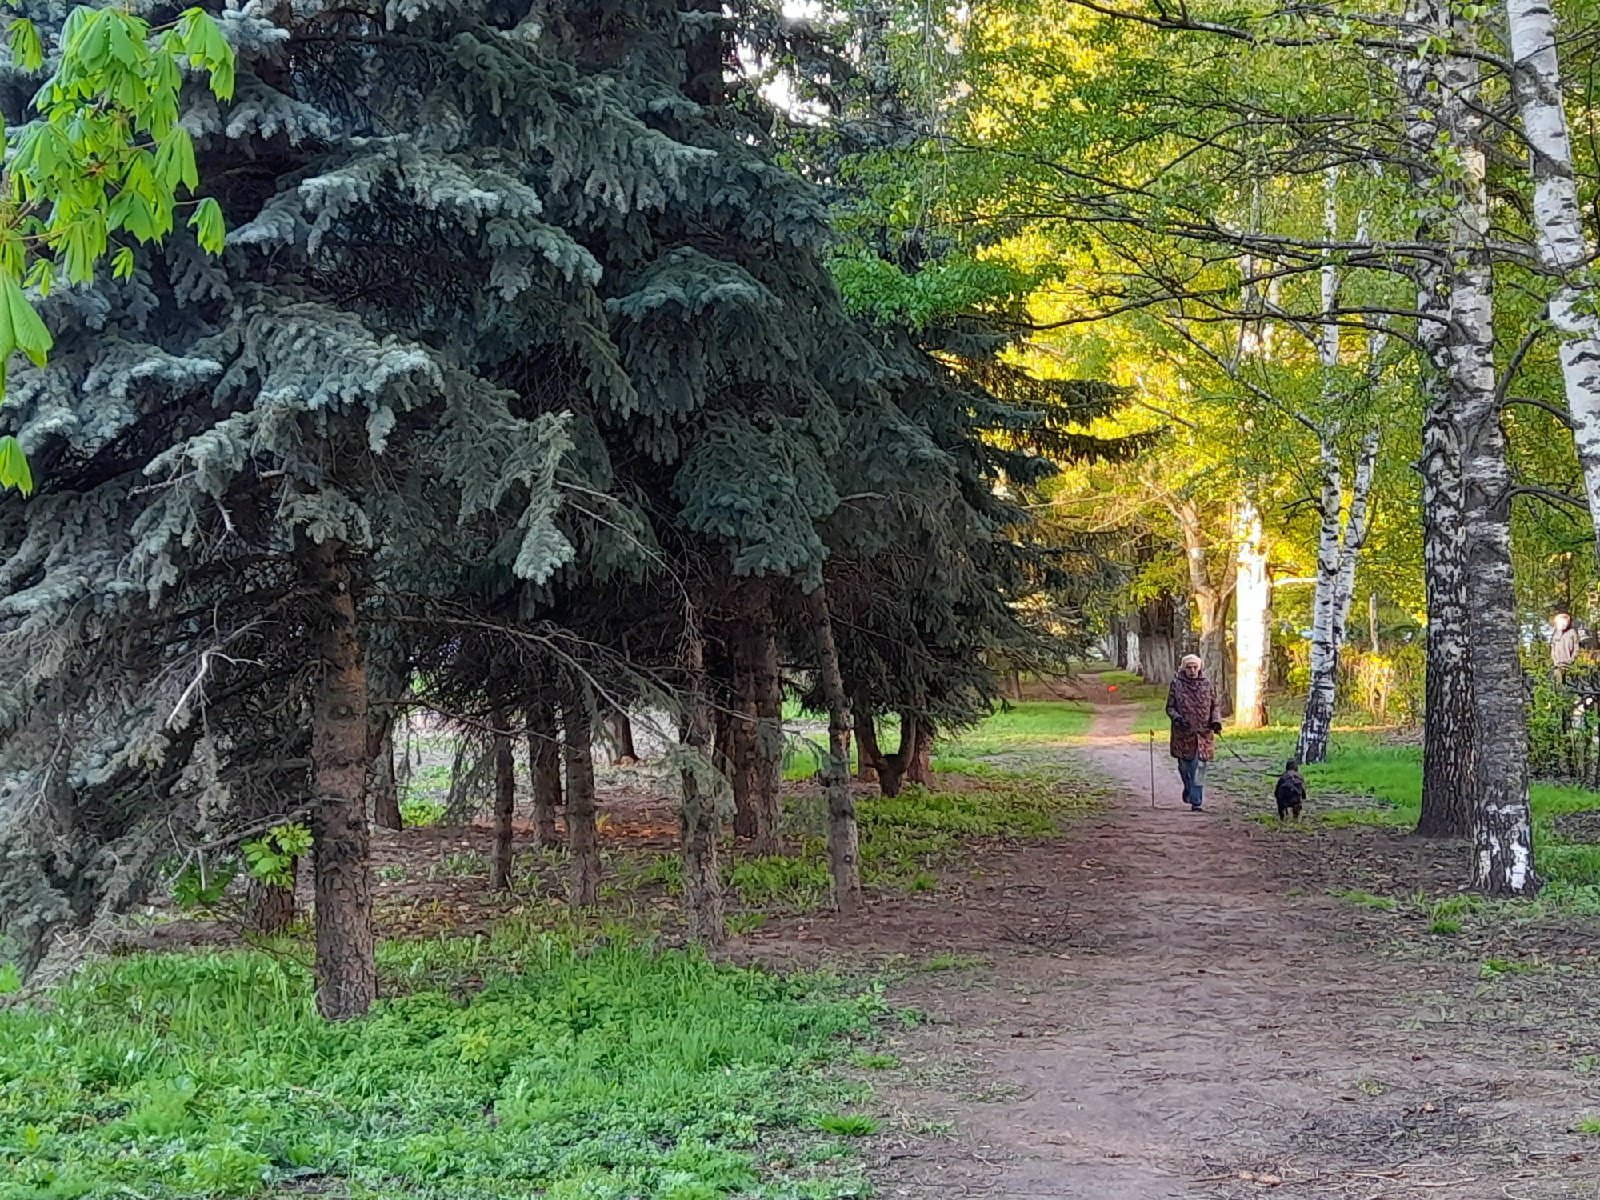 Площадь Жукова и близлежащие скверы — излюбленные места местных жителей для прогулок